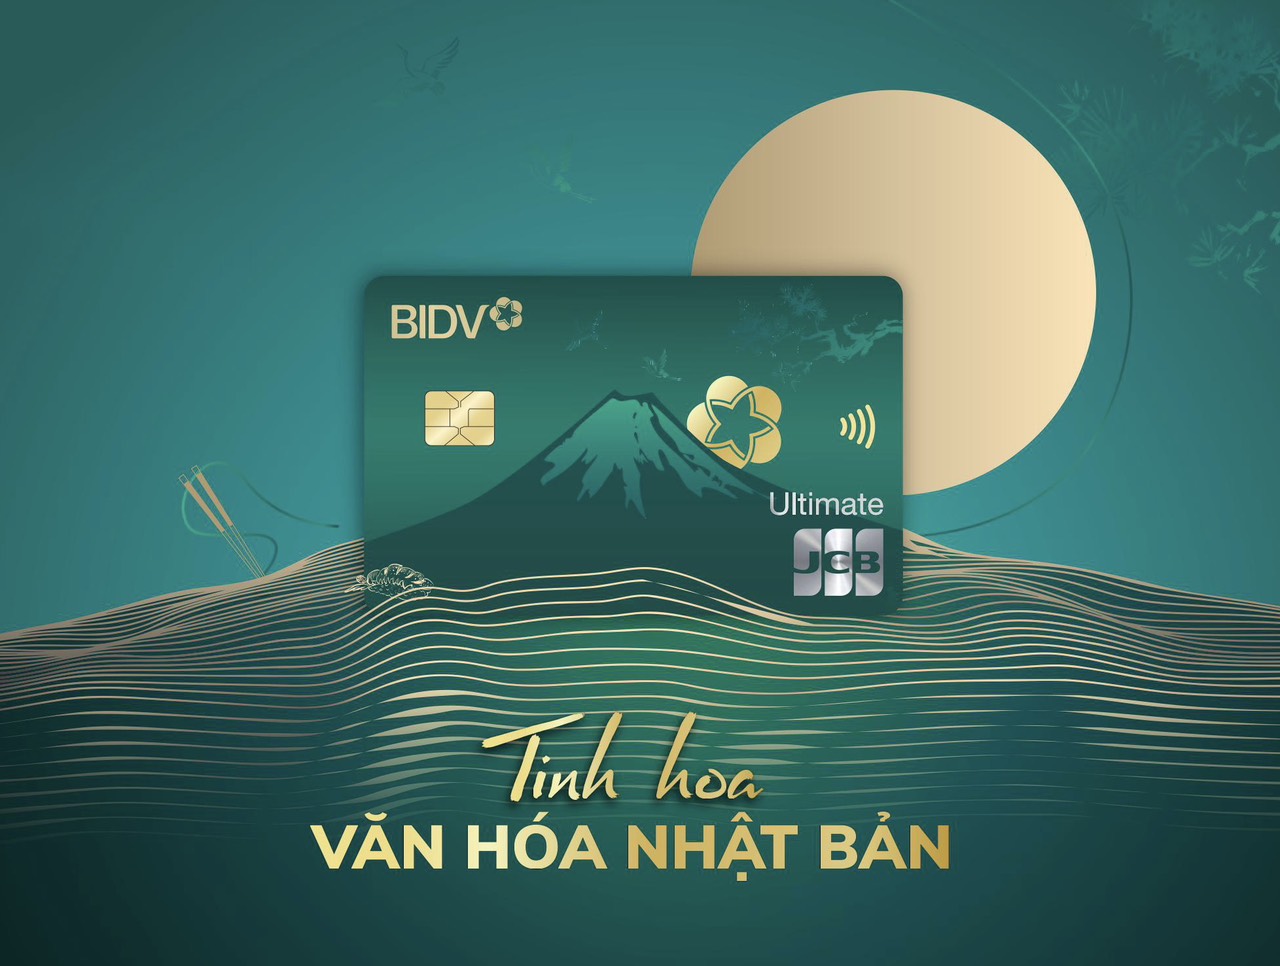 Thẻ tín dụng BIDV JCB Ultimate - Top 50 sản phẩm dịch vụ tin dùng Việt Nam 2023 - Ảnh 2.